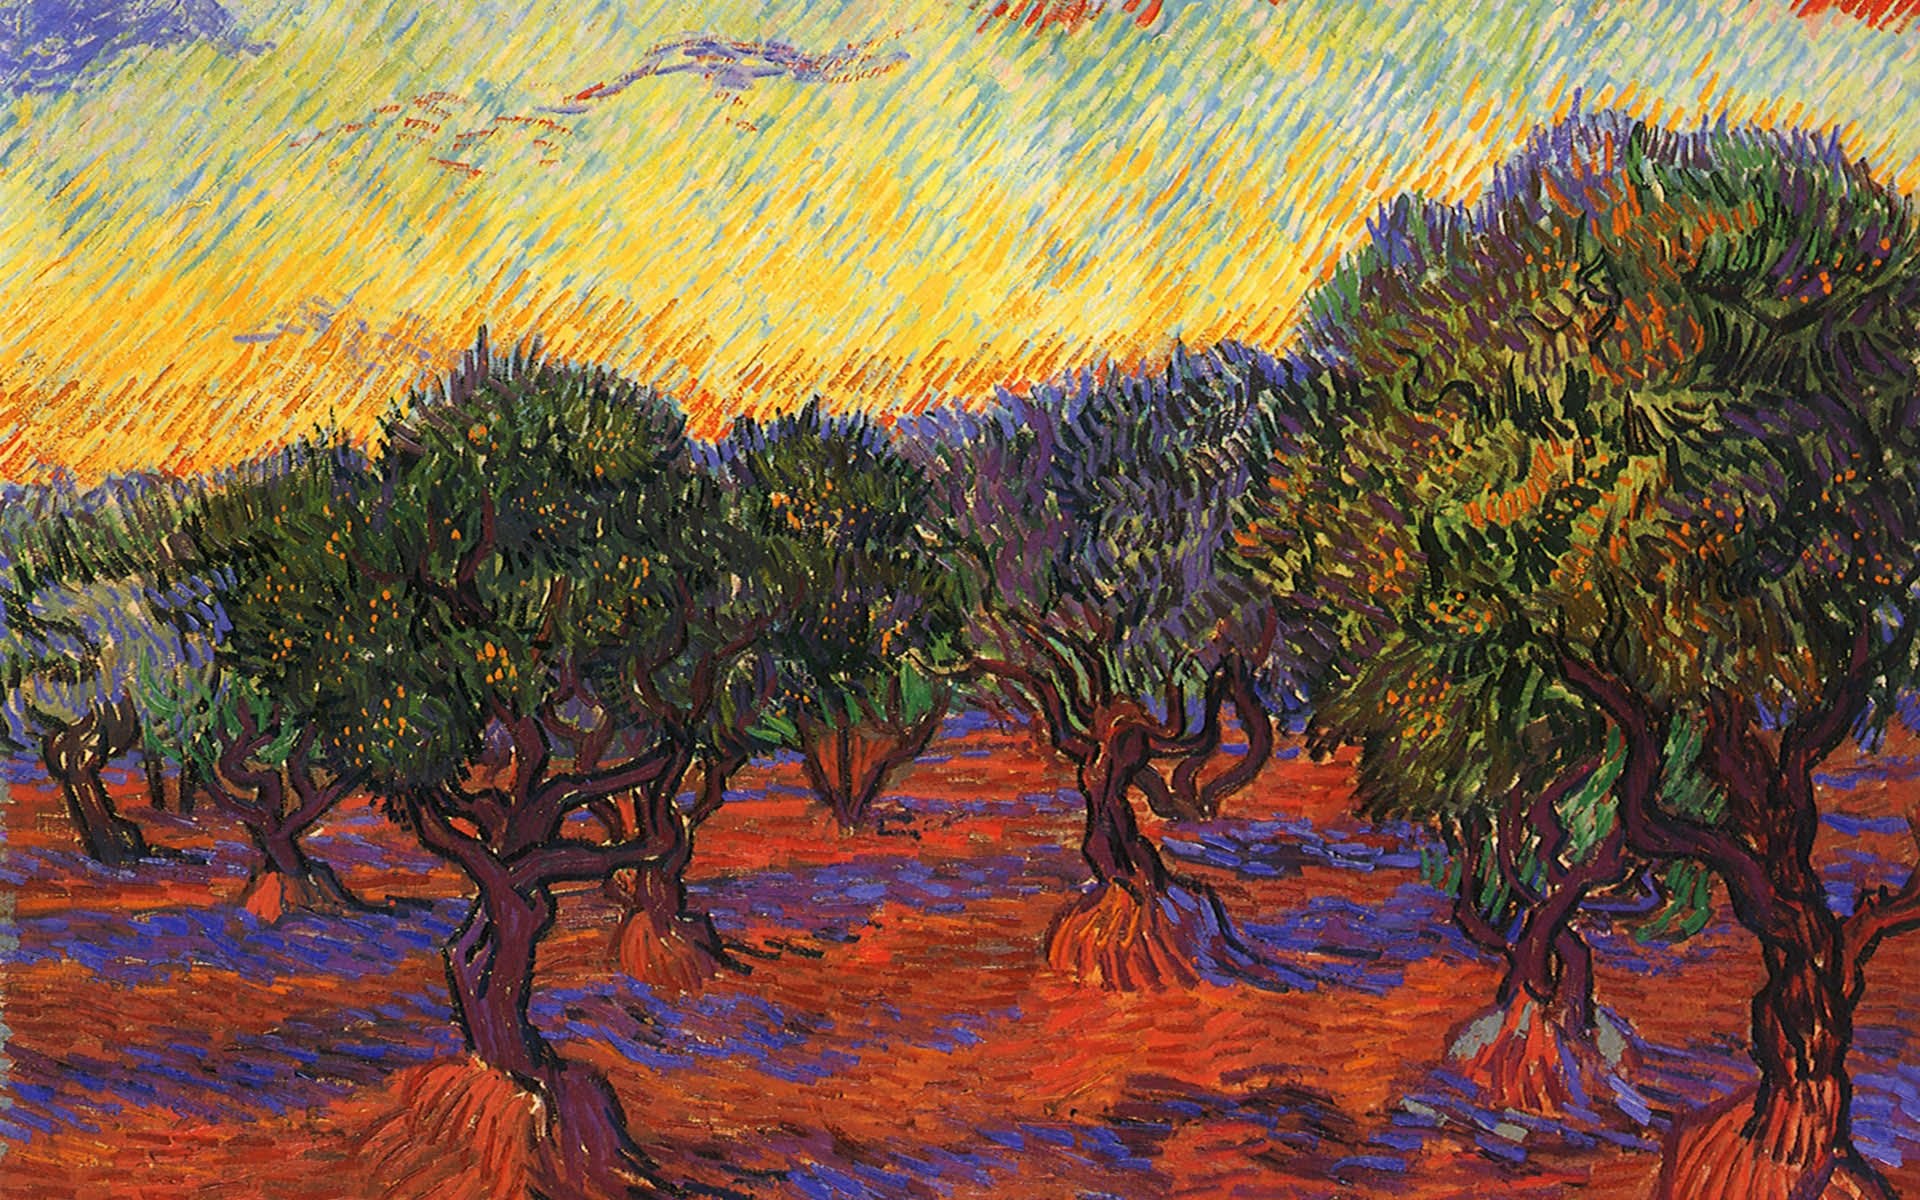 Mơ tưởng về thế giới của Van Gogh qua hình nền máy tính nghệ thuật. Tận hưởng một loạt hơn 52 hình ảnh đa dạng cho máy tính của bạn, truyền tải một thông điệp sâu đậm về sự đa dạng và sáng tạo.